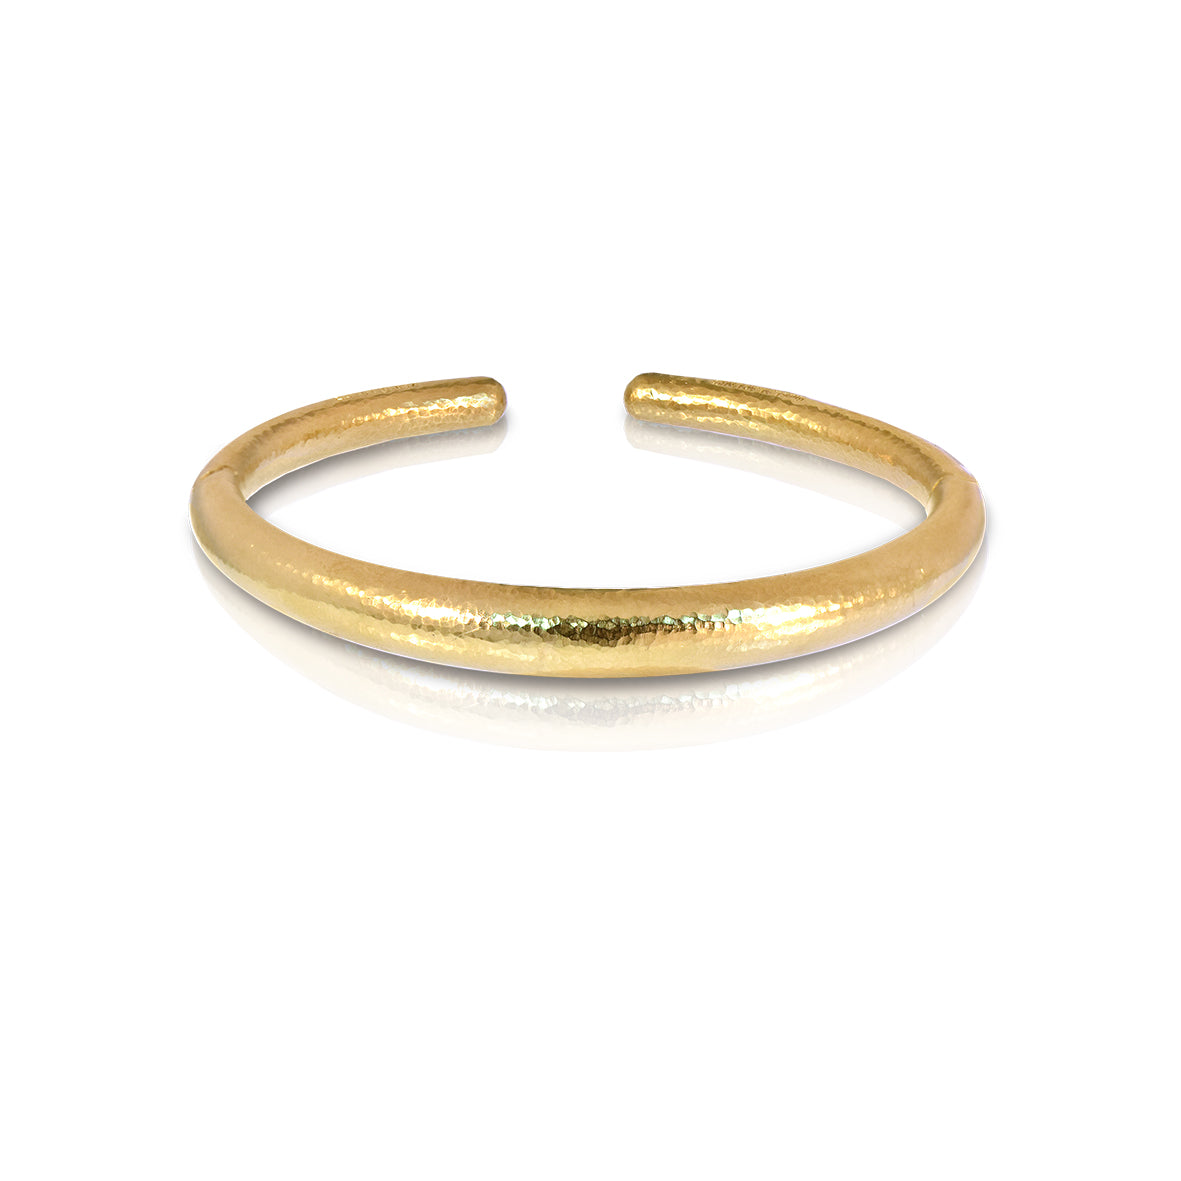 LALAoUNIS Hand Hammered 18K Gold Bracelet